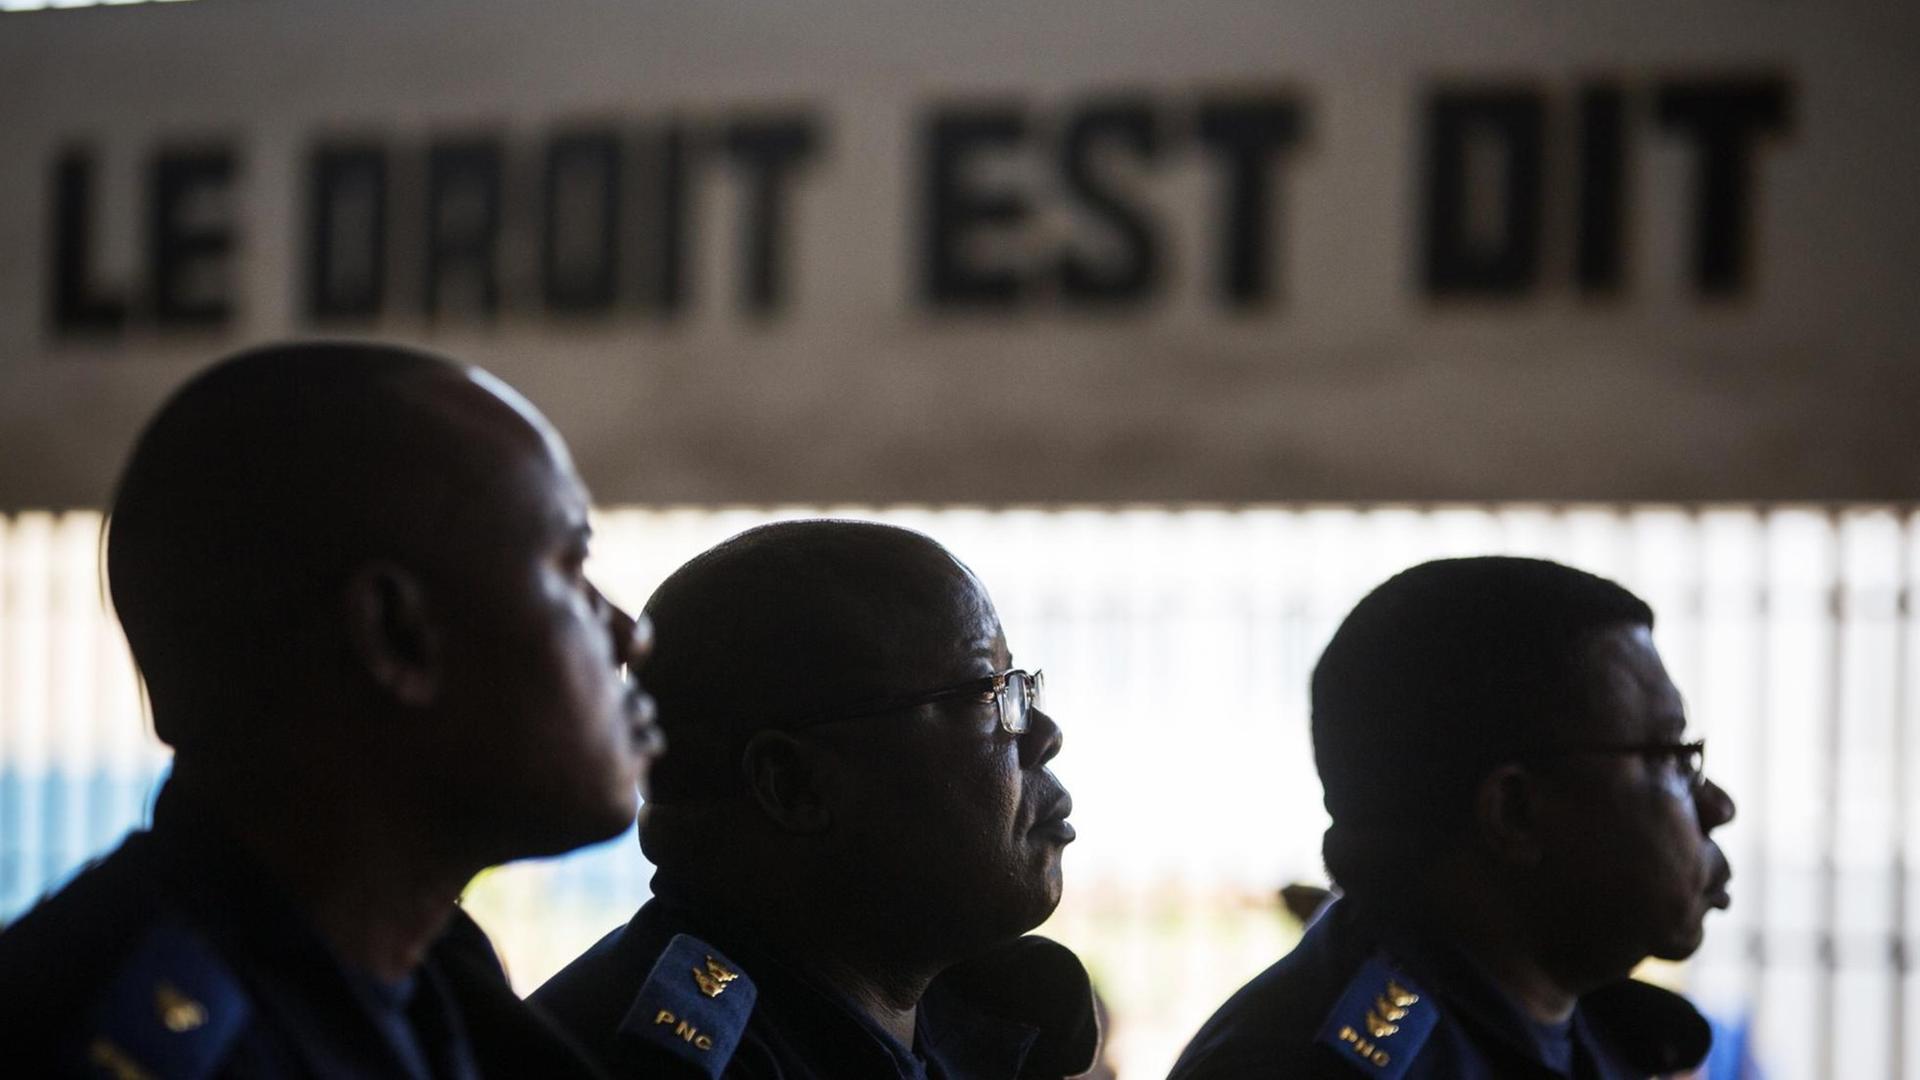 Verdächtige während einer gerichtlichen Anhörung im Makala-Gefängnis in der kongolesischen Hauptstadt Kinshasa. Im Hintergrund der französische Schriftzug: "Le droit es dit" - "Das Recht ist gesprochen".